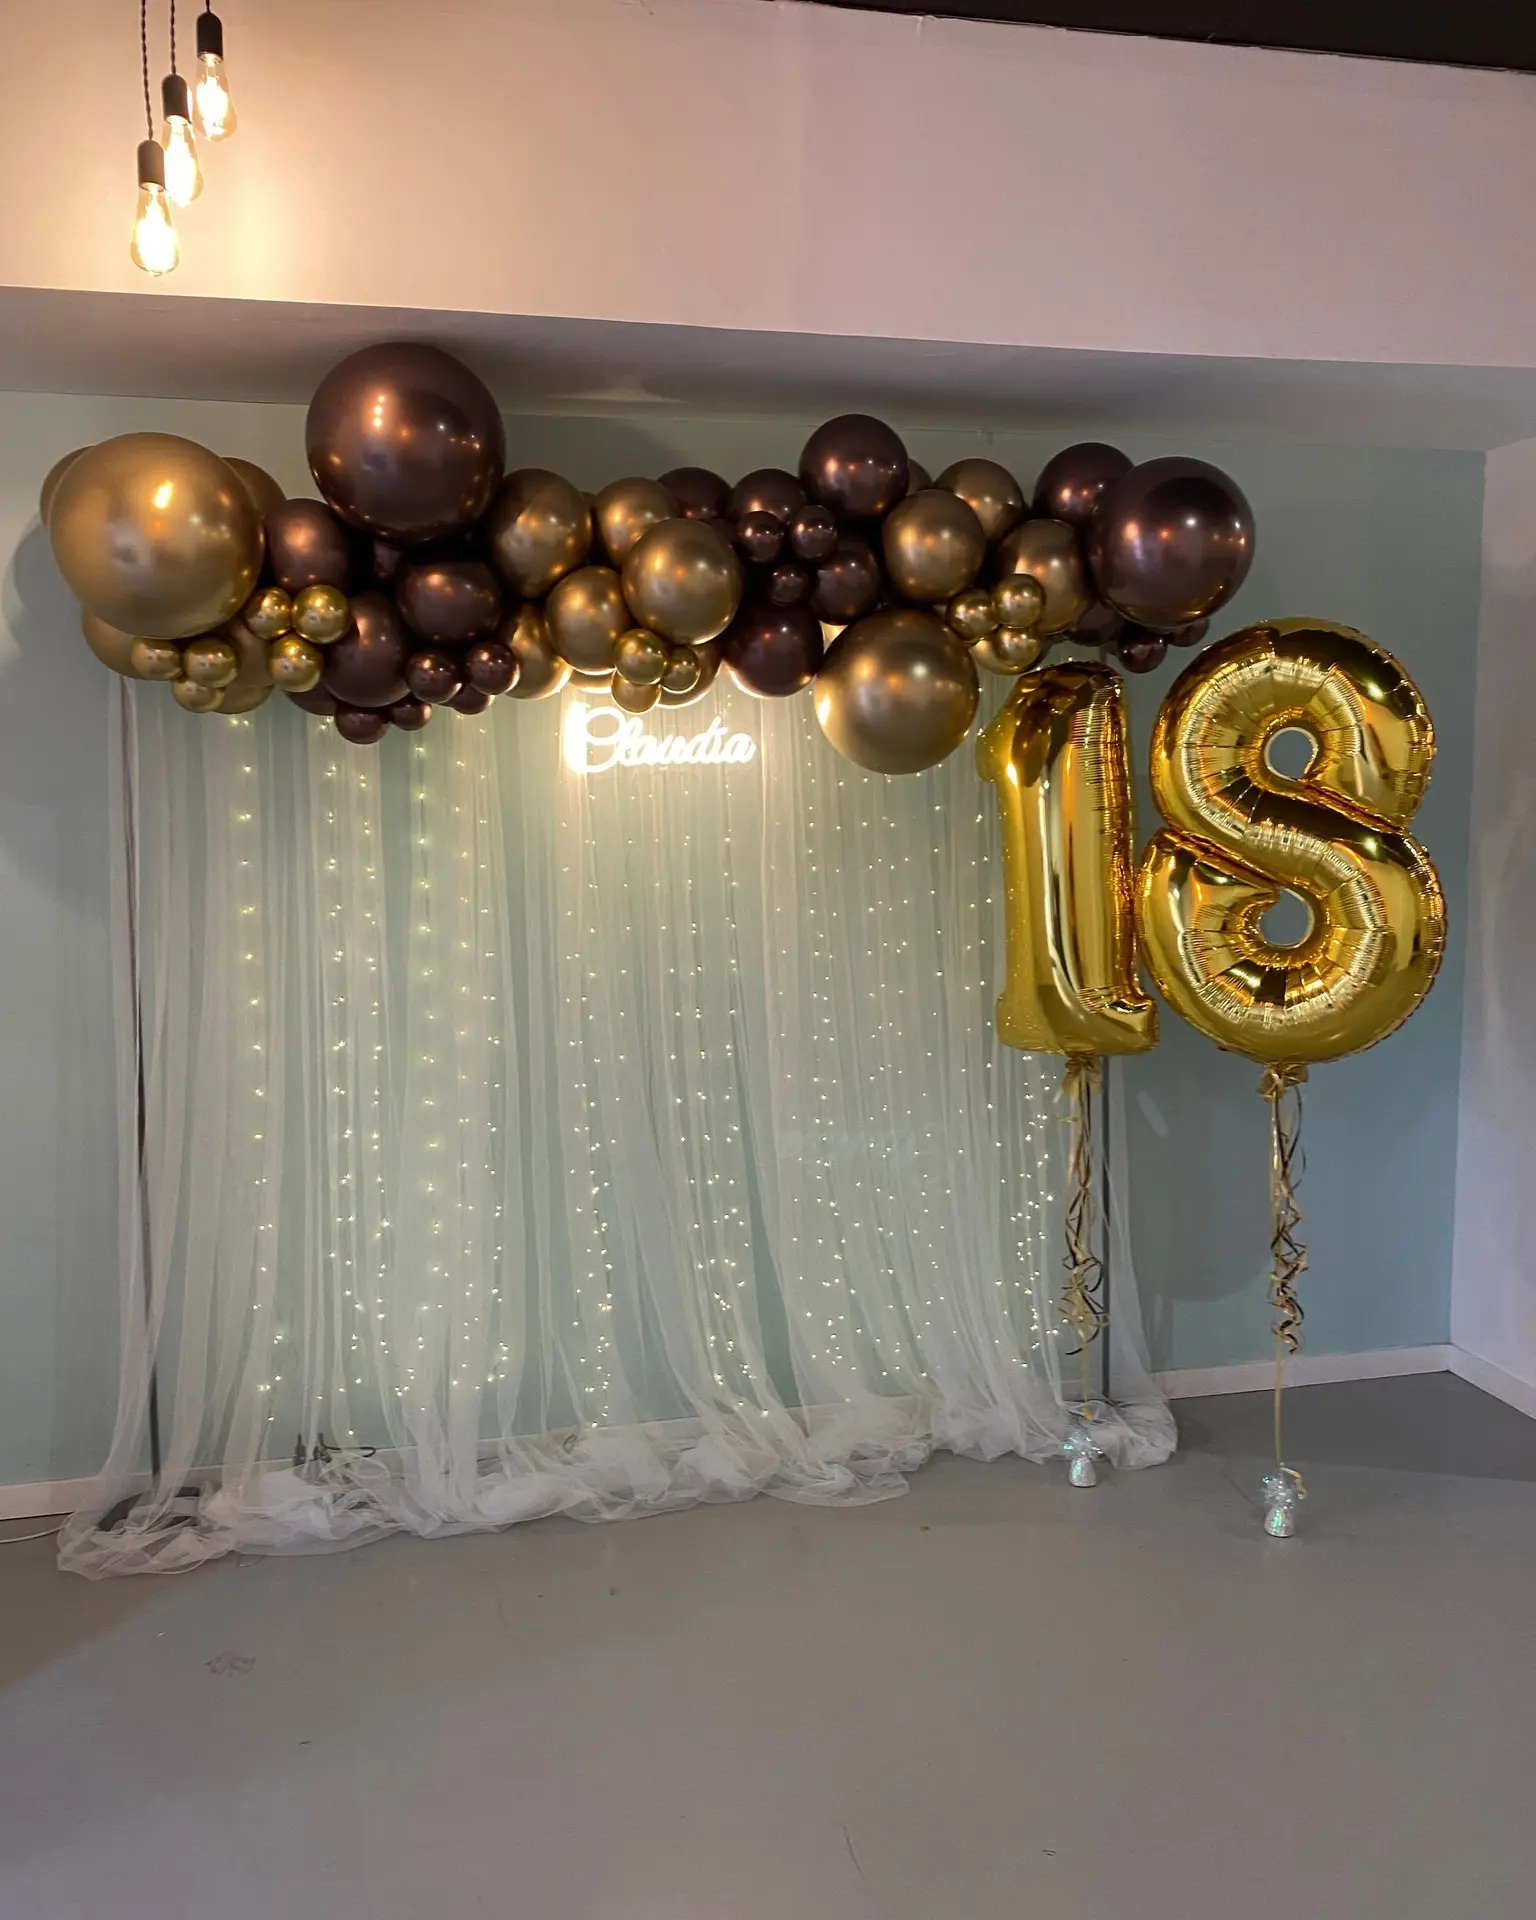 Una chica de cumpleaños por su 18 cumpleaños con globos Fotografía